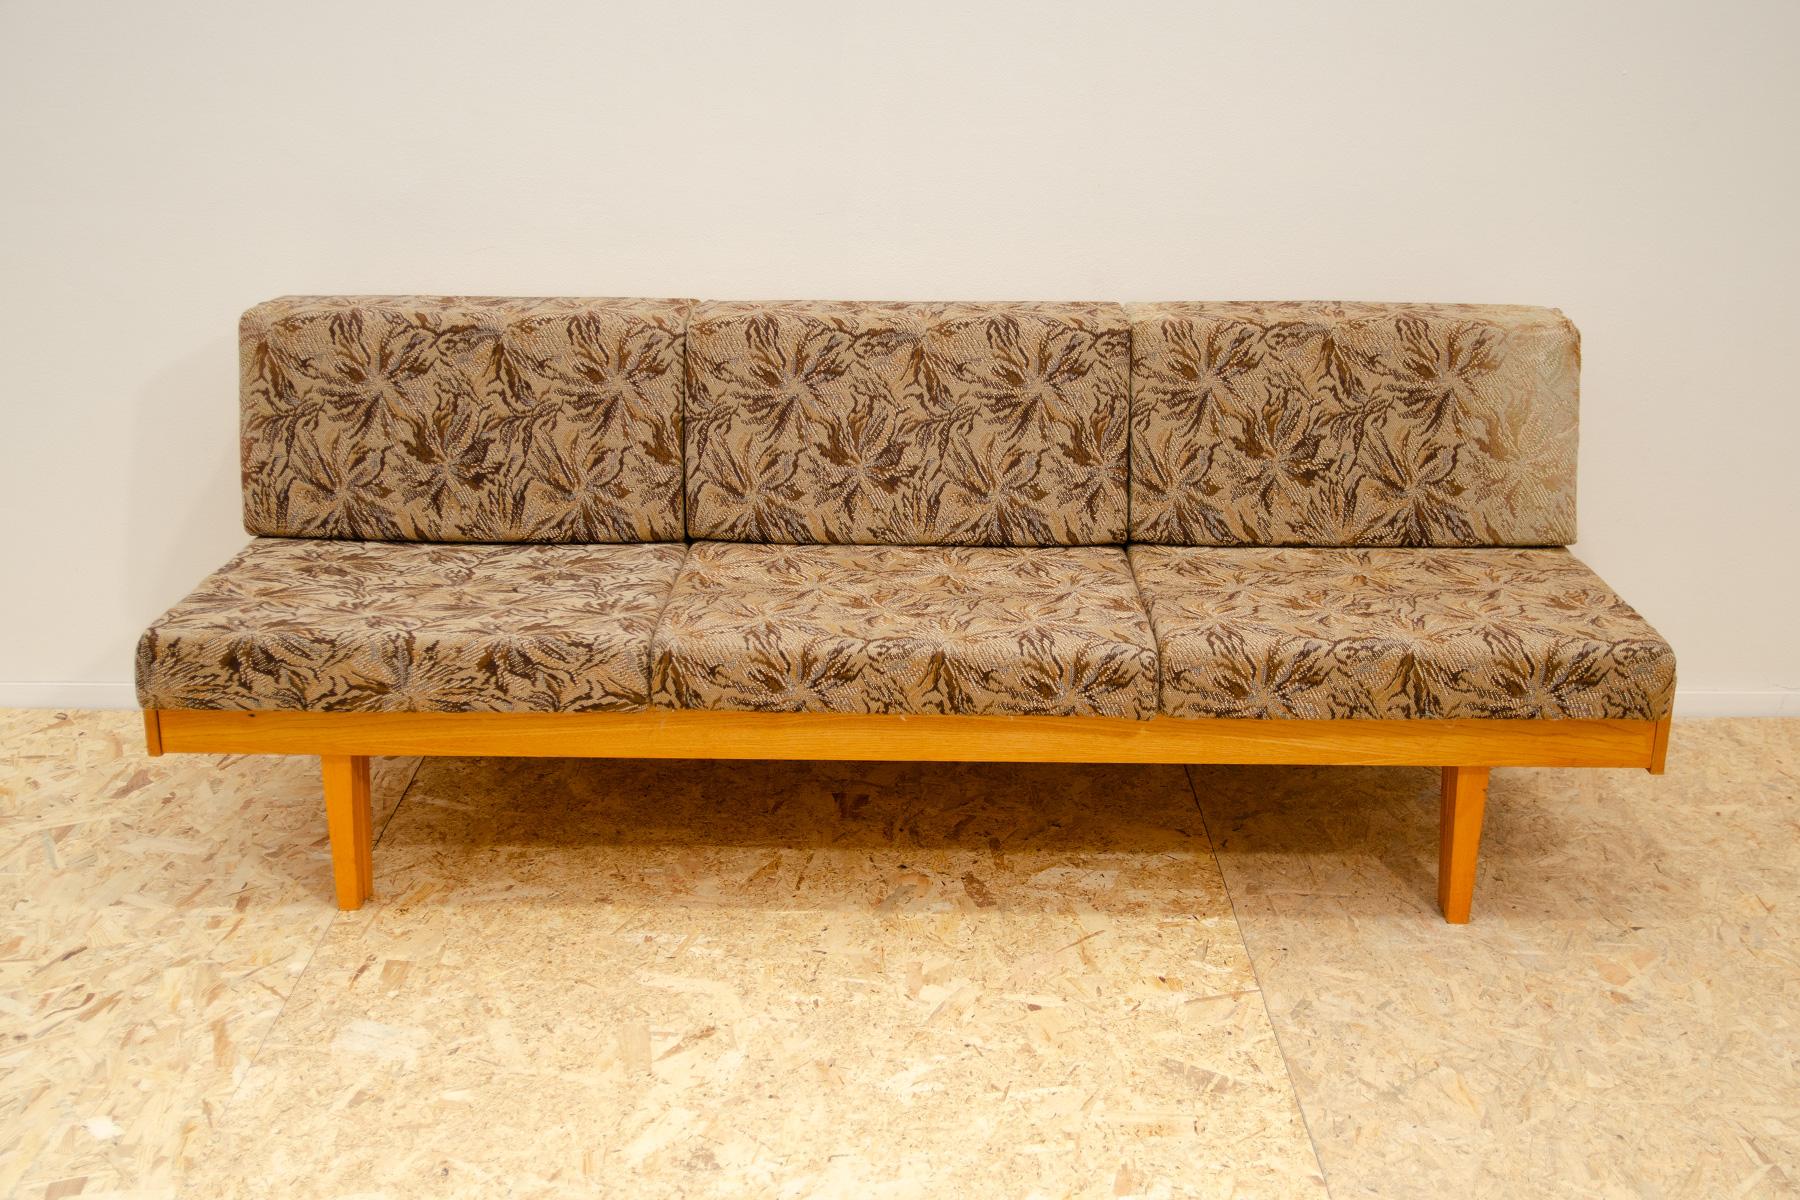 Canapé-lit du milieu du siècle dans le style Hans Wegner, fabriqué dans l'ancienne Tchécoslovaquie dans les années 1960. MATERIAL : bois de Beeche, tissu. Le canapé est structurellement en très bon état, le tissu est complètement décoloré par le